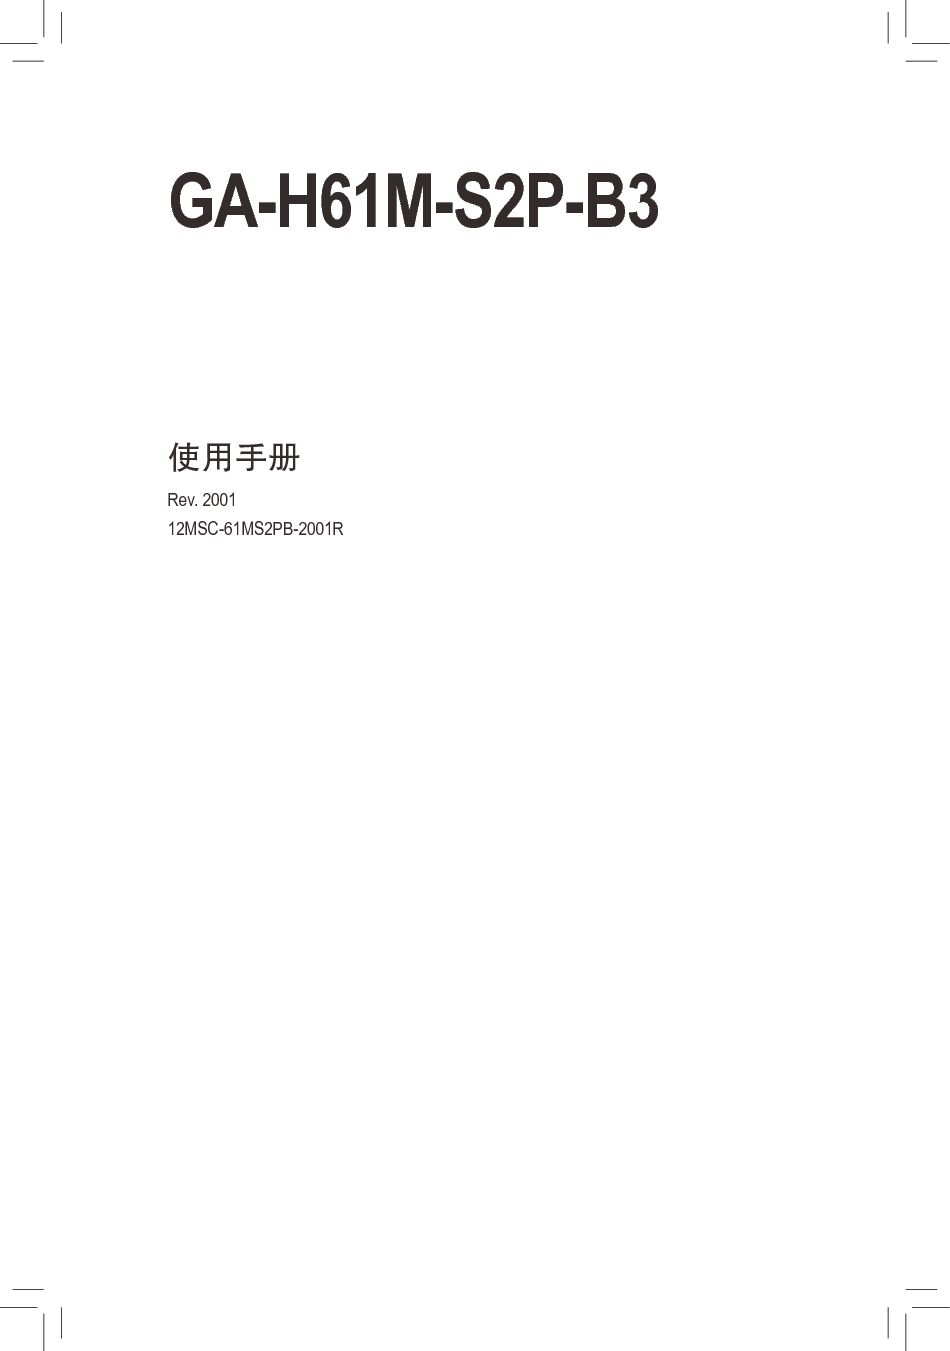 技嘉 Gigabyte GA-H61M-S2P-B3 2001版 使用手册 封面